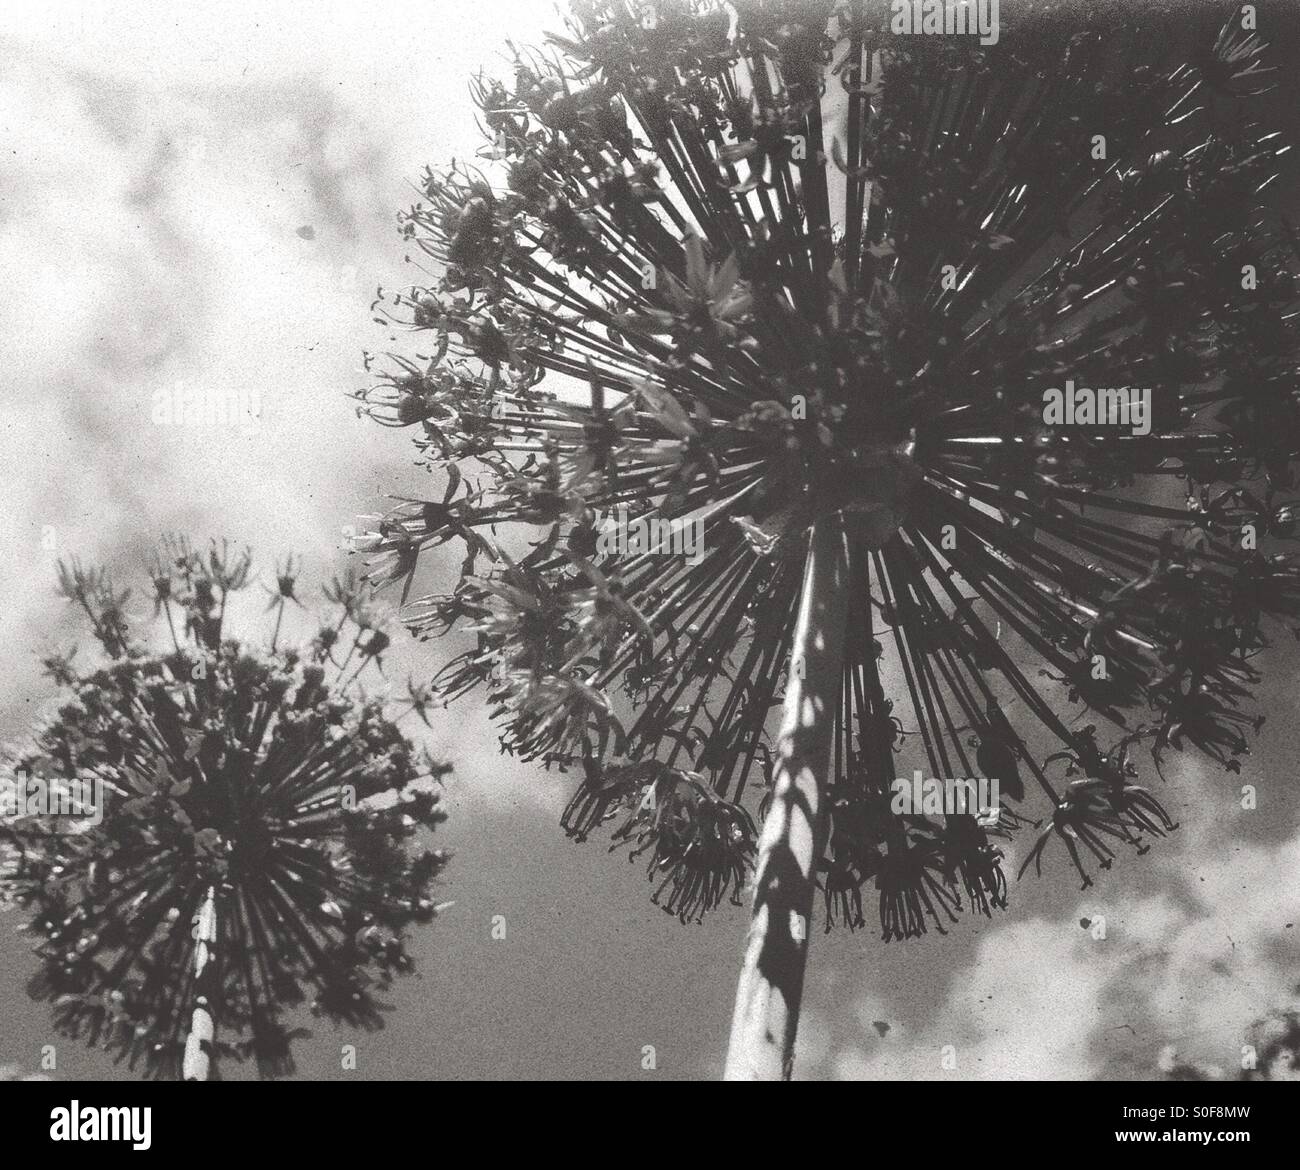 Allium gegen ein bewölkter Himmel in Monochrom Stockfoto